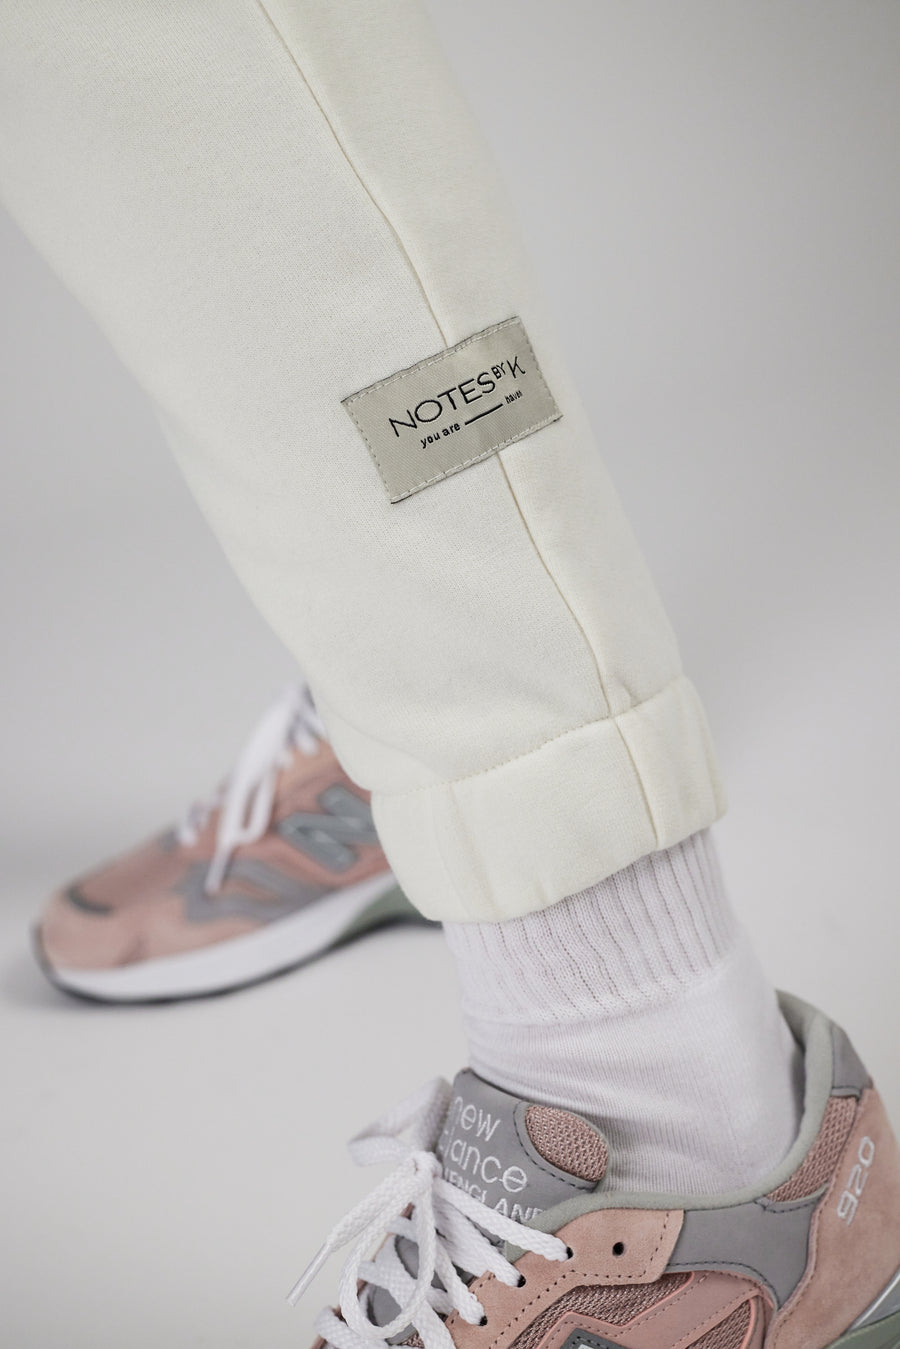 Labeling detail on sweatpants in color eggnog